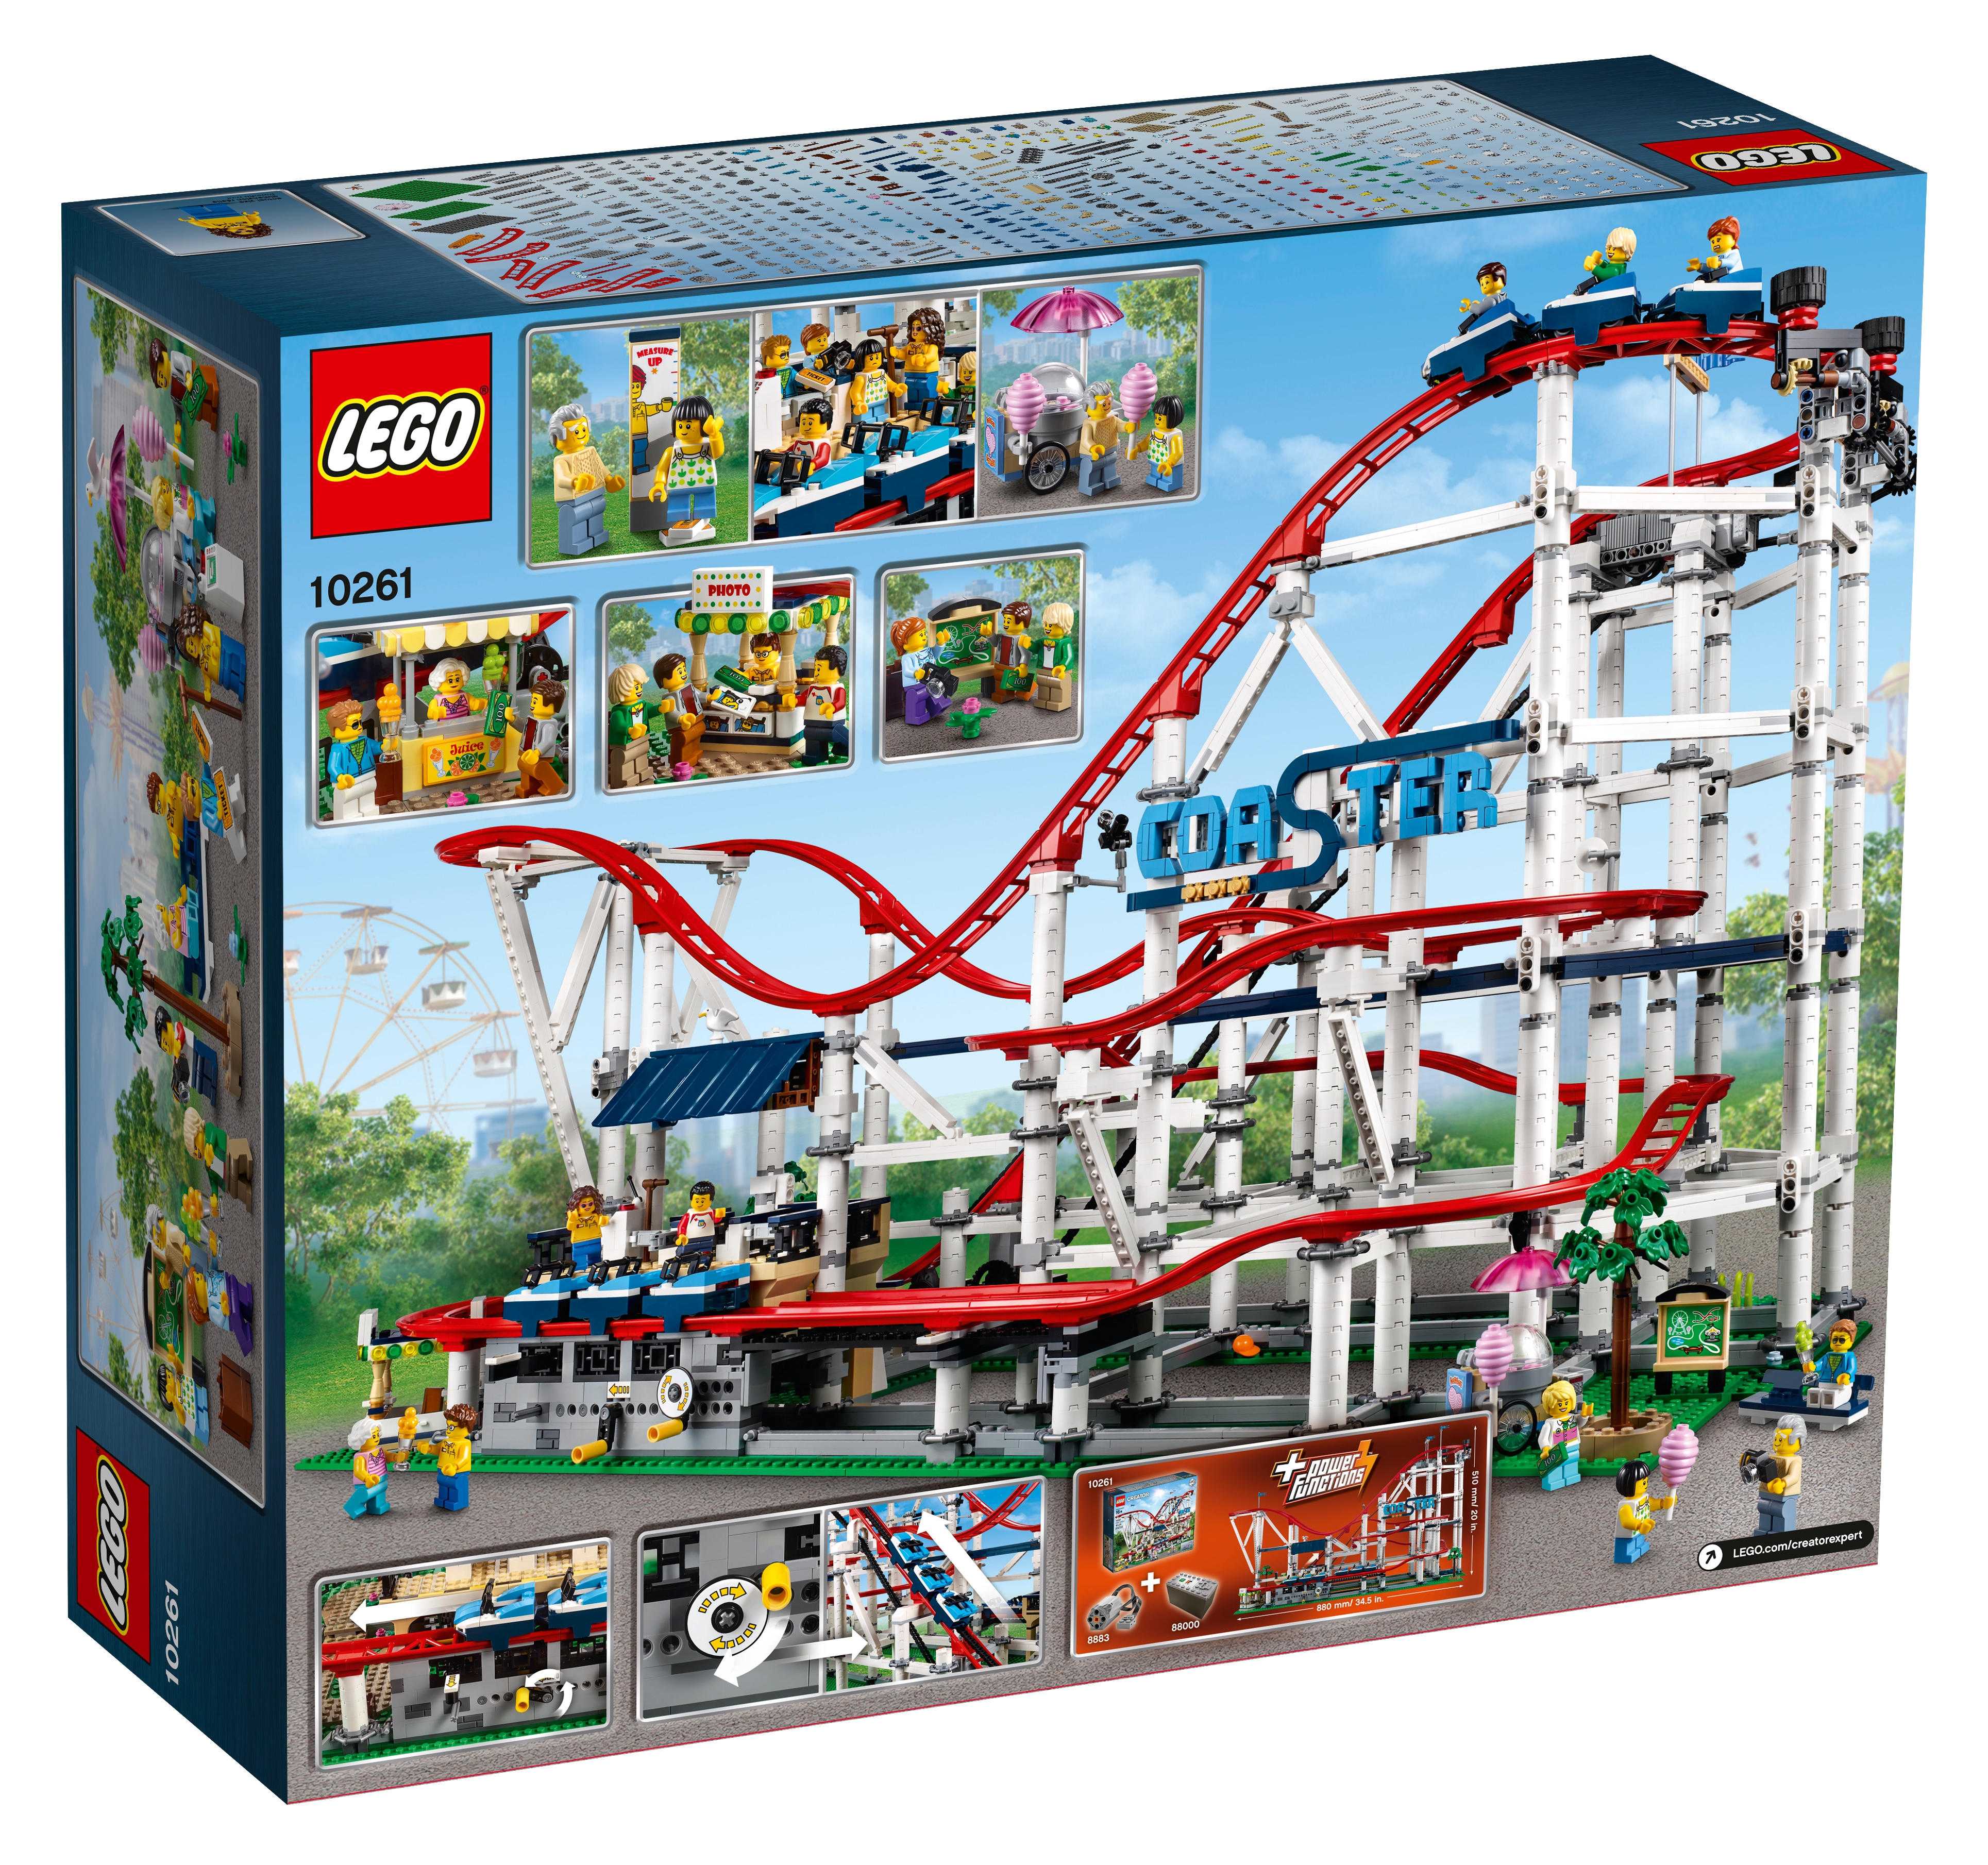 Surrey Absolut Bonus LEPIN case - About Us - LEGO.com